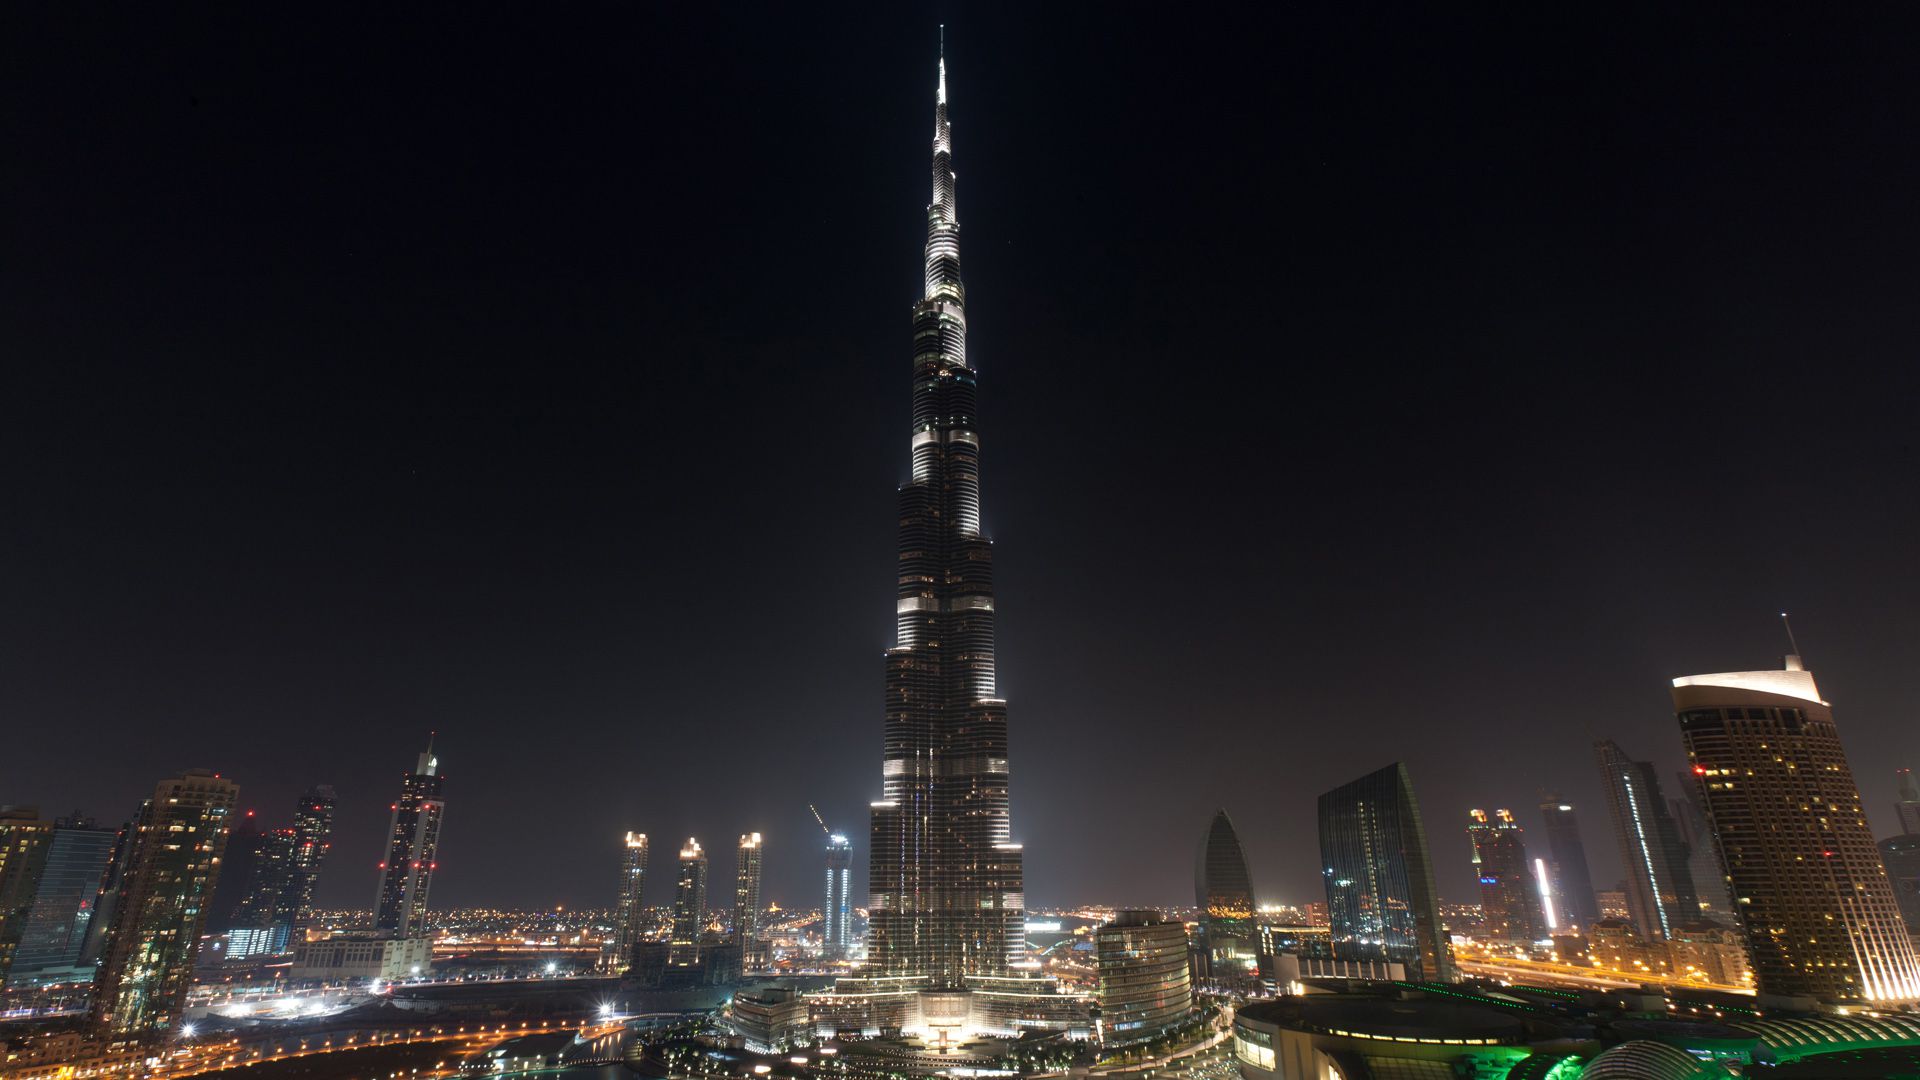 Burj Khalifa Night View Wallpaper Hd - Burj Khalifa Dubai At Night -  1920x1080 Wallpaper 